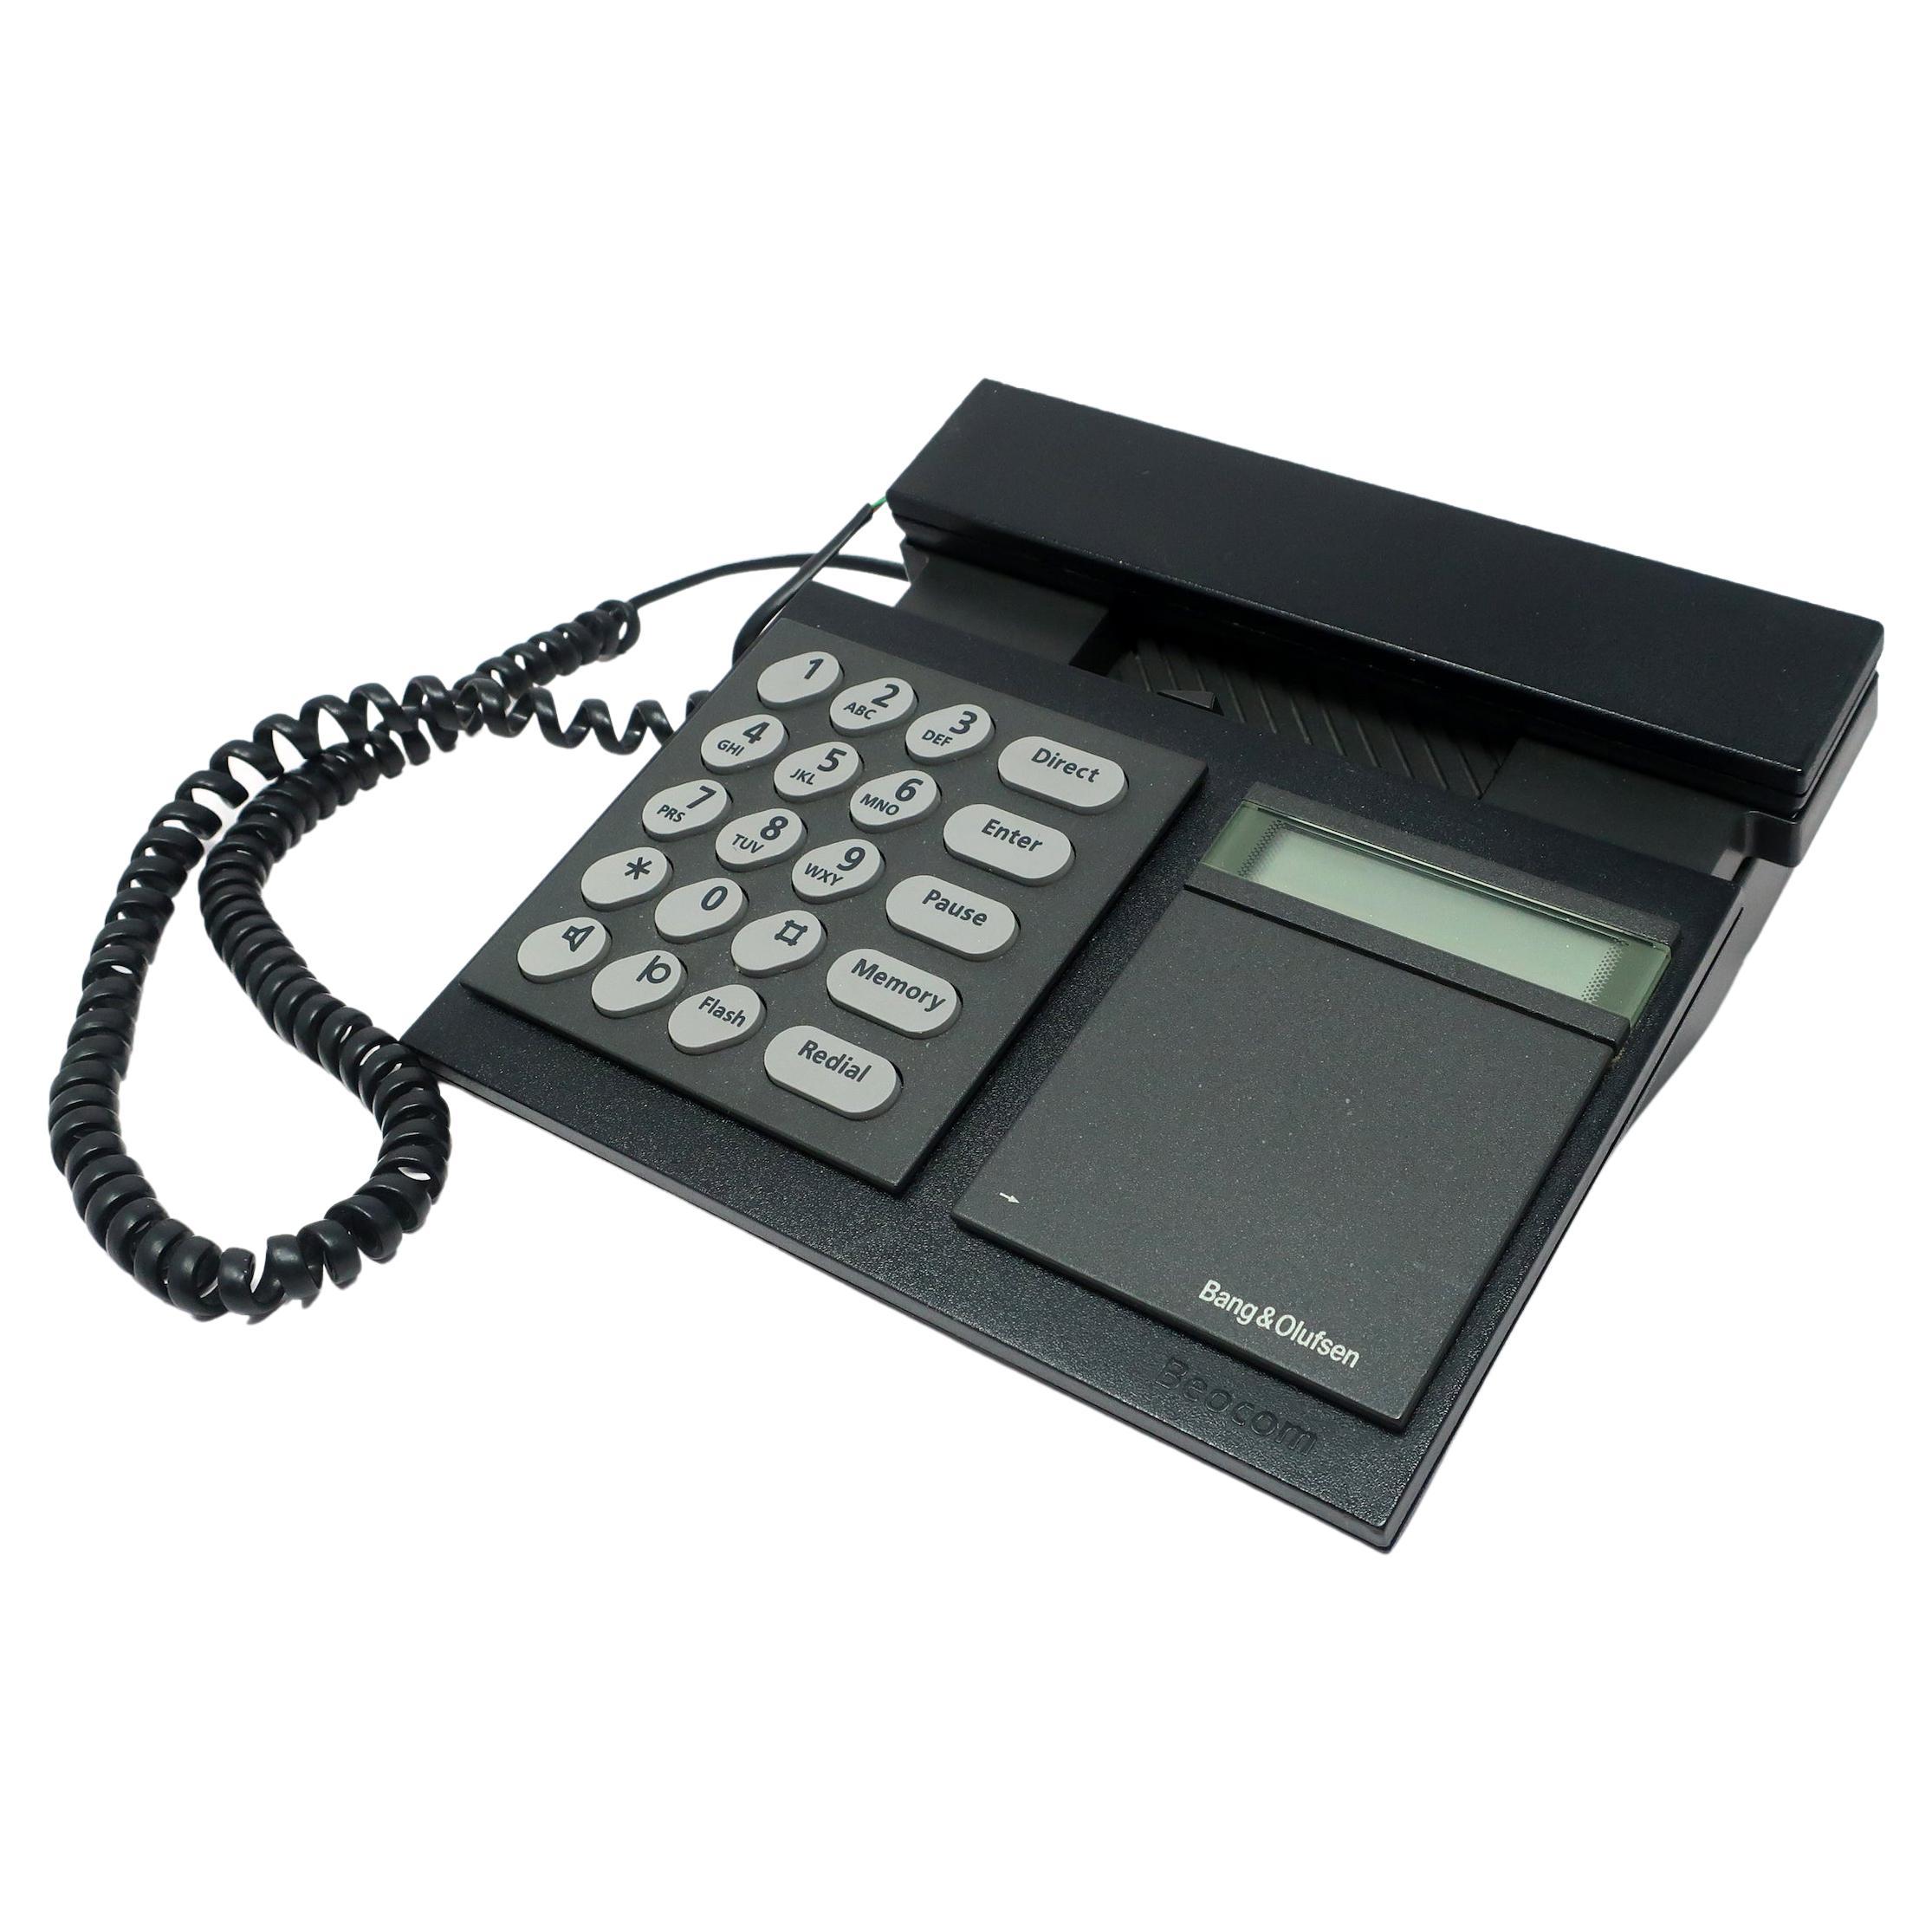 téléphone Beocom 2000 Bang & Olufsen des années 1980